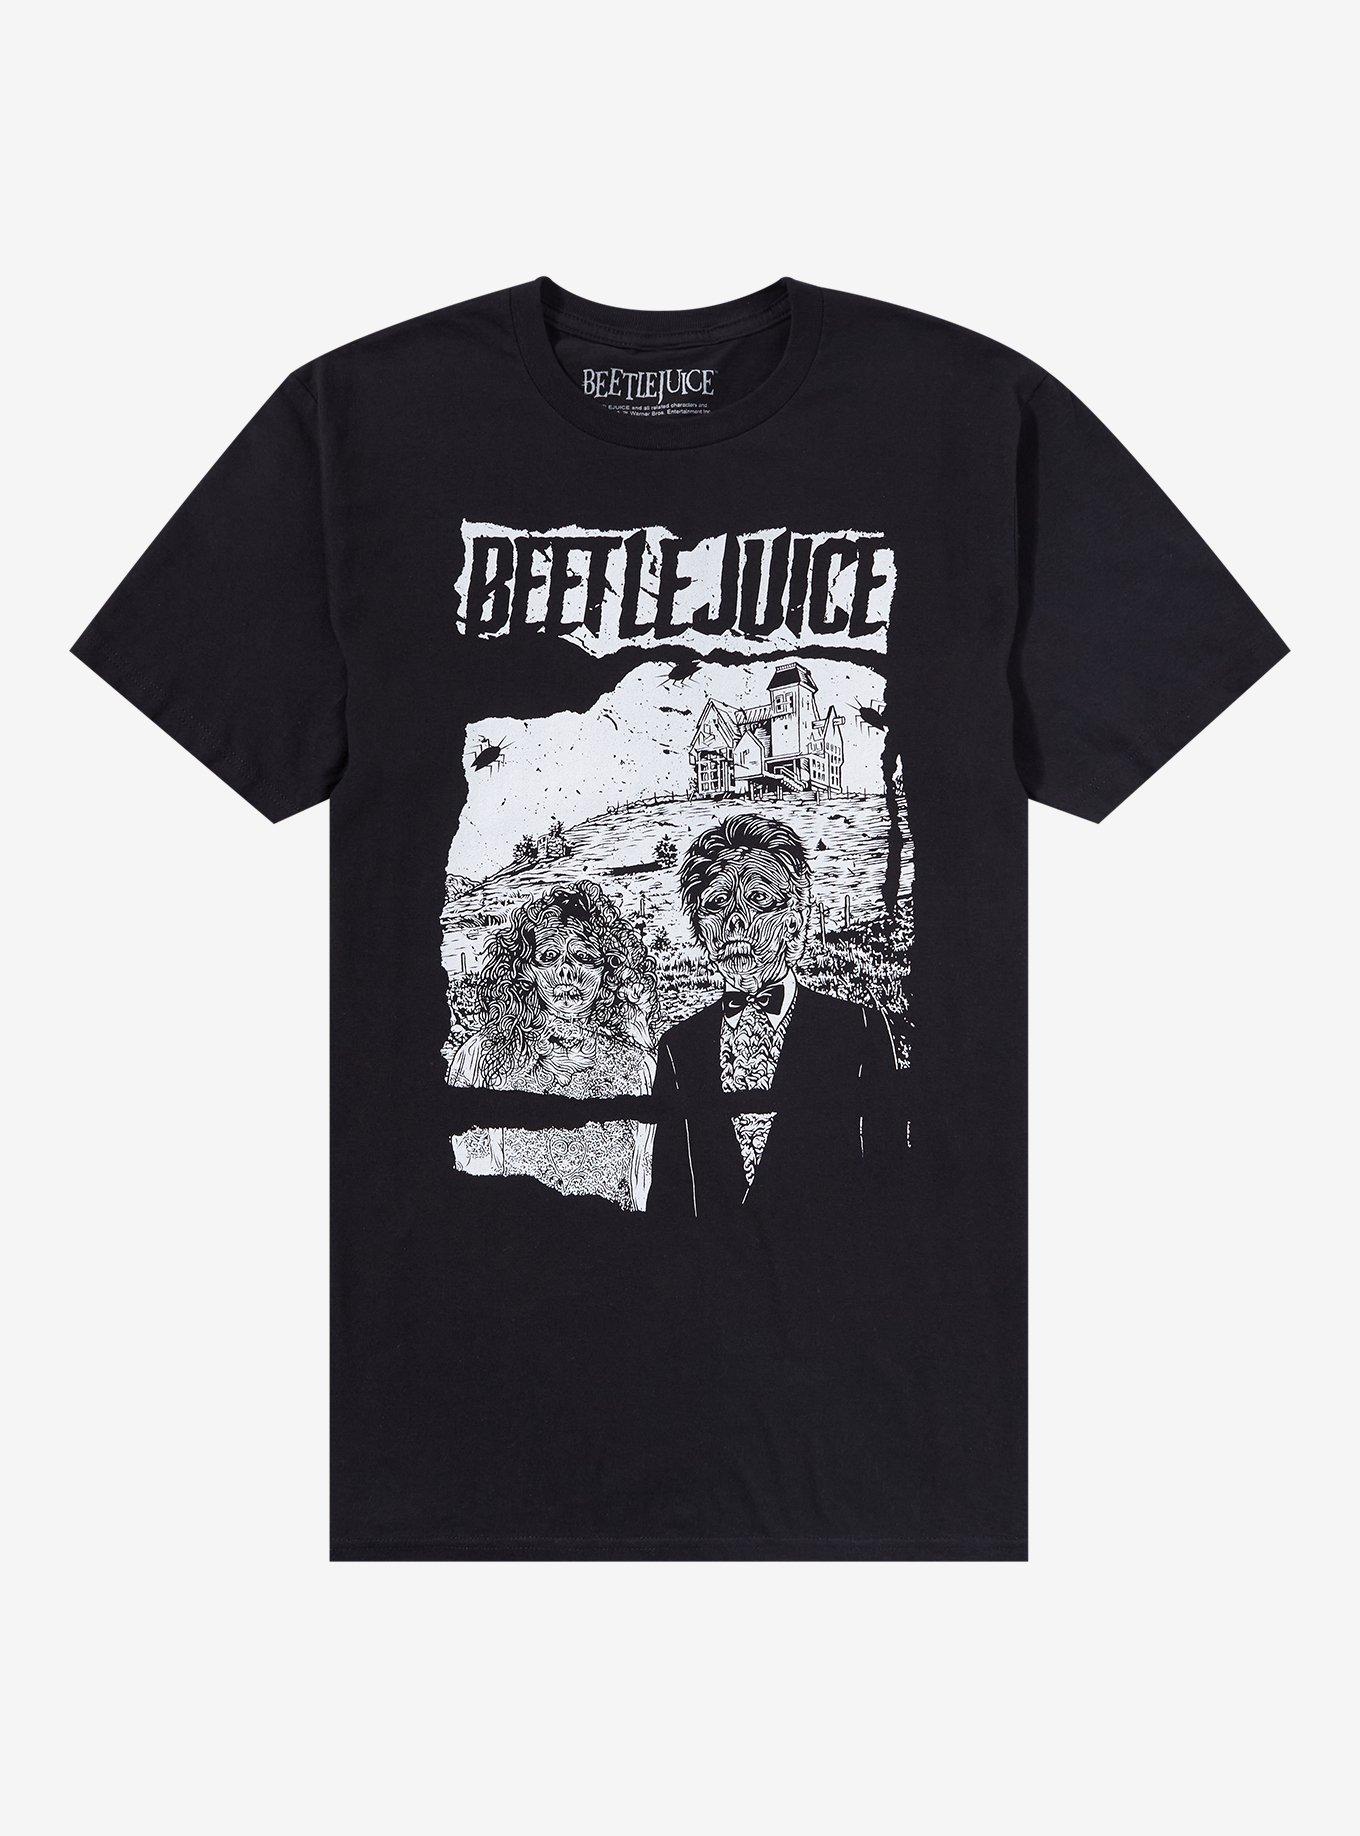 Beetlejuice Skeleton Portrait T-Shirt, BLACK, hi-res